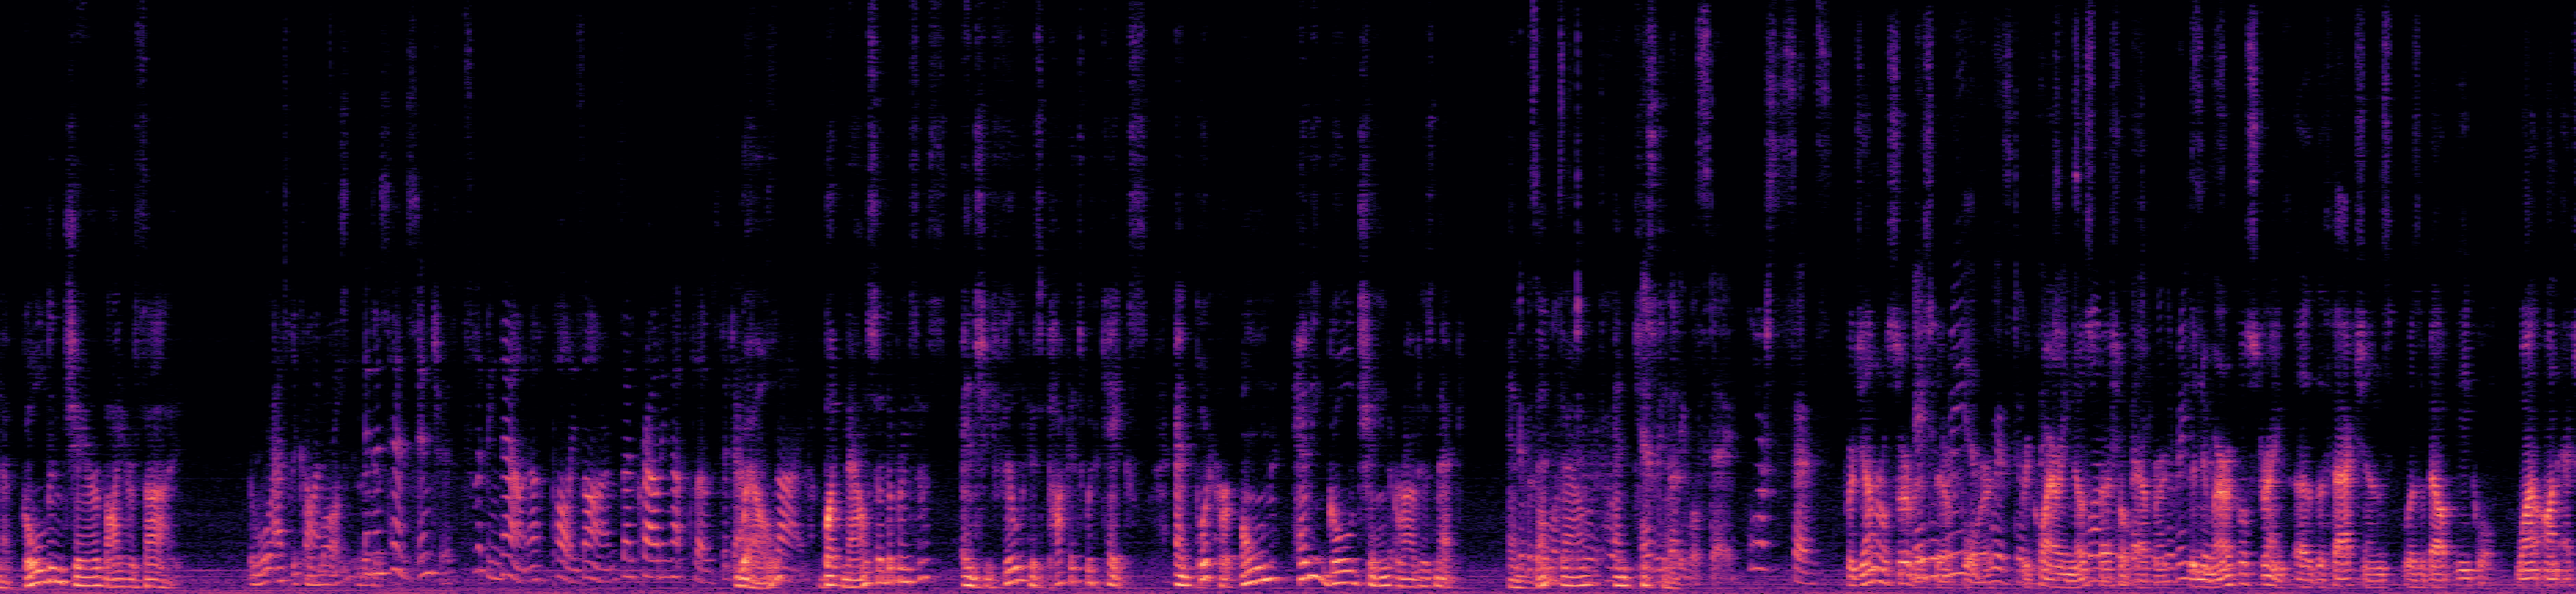 Spectrogram of Mixed Audio